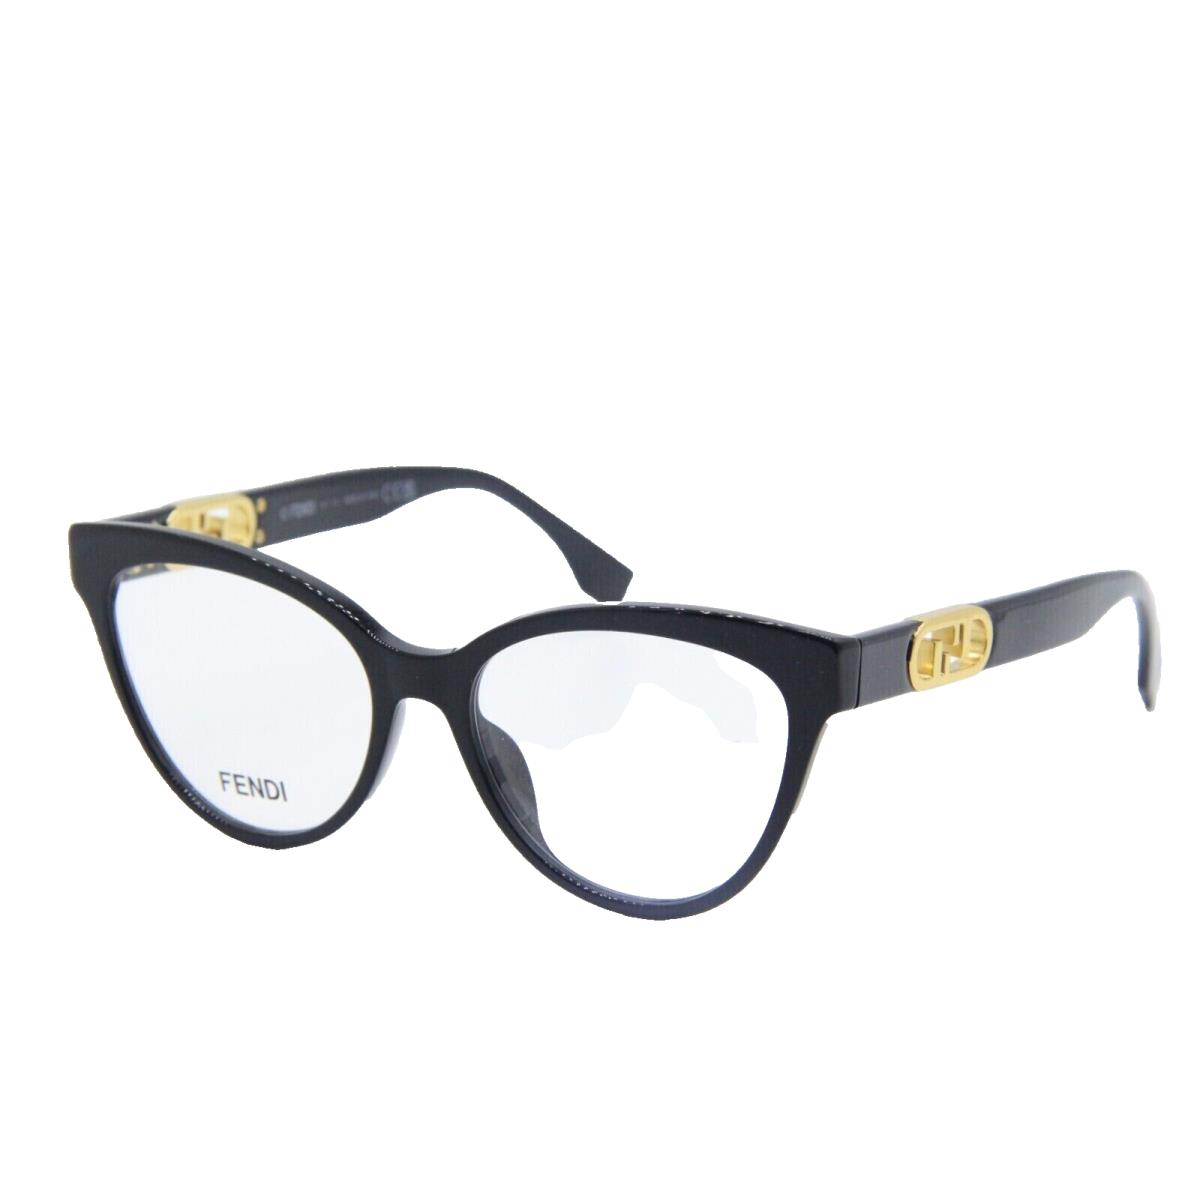 Fendi FE 50026I 001 Eyeglasses Black Gold Optical Frame 53mm